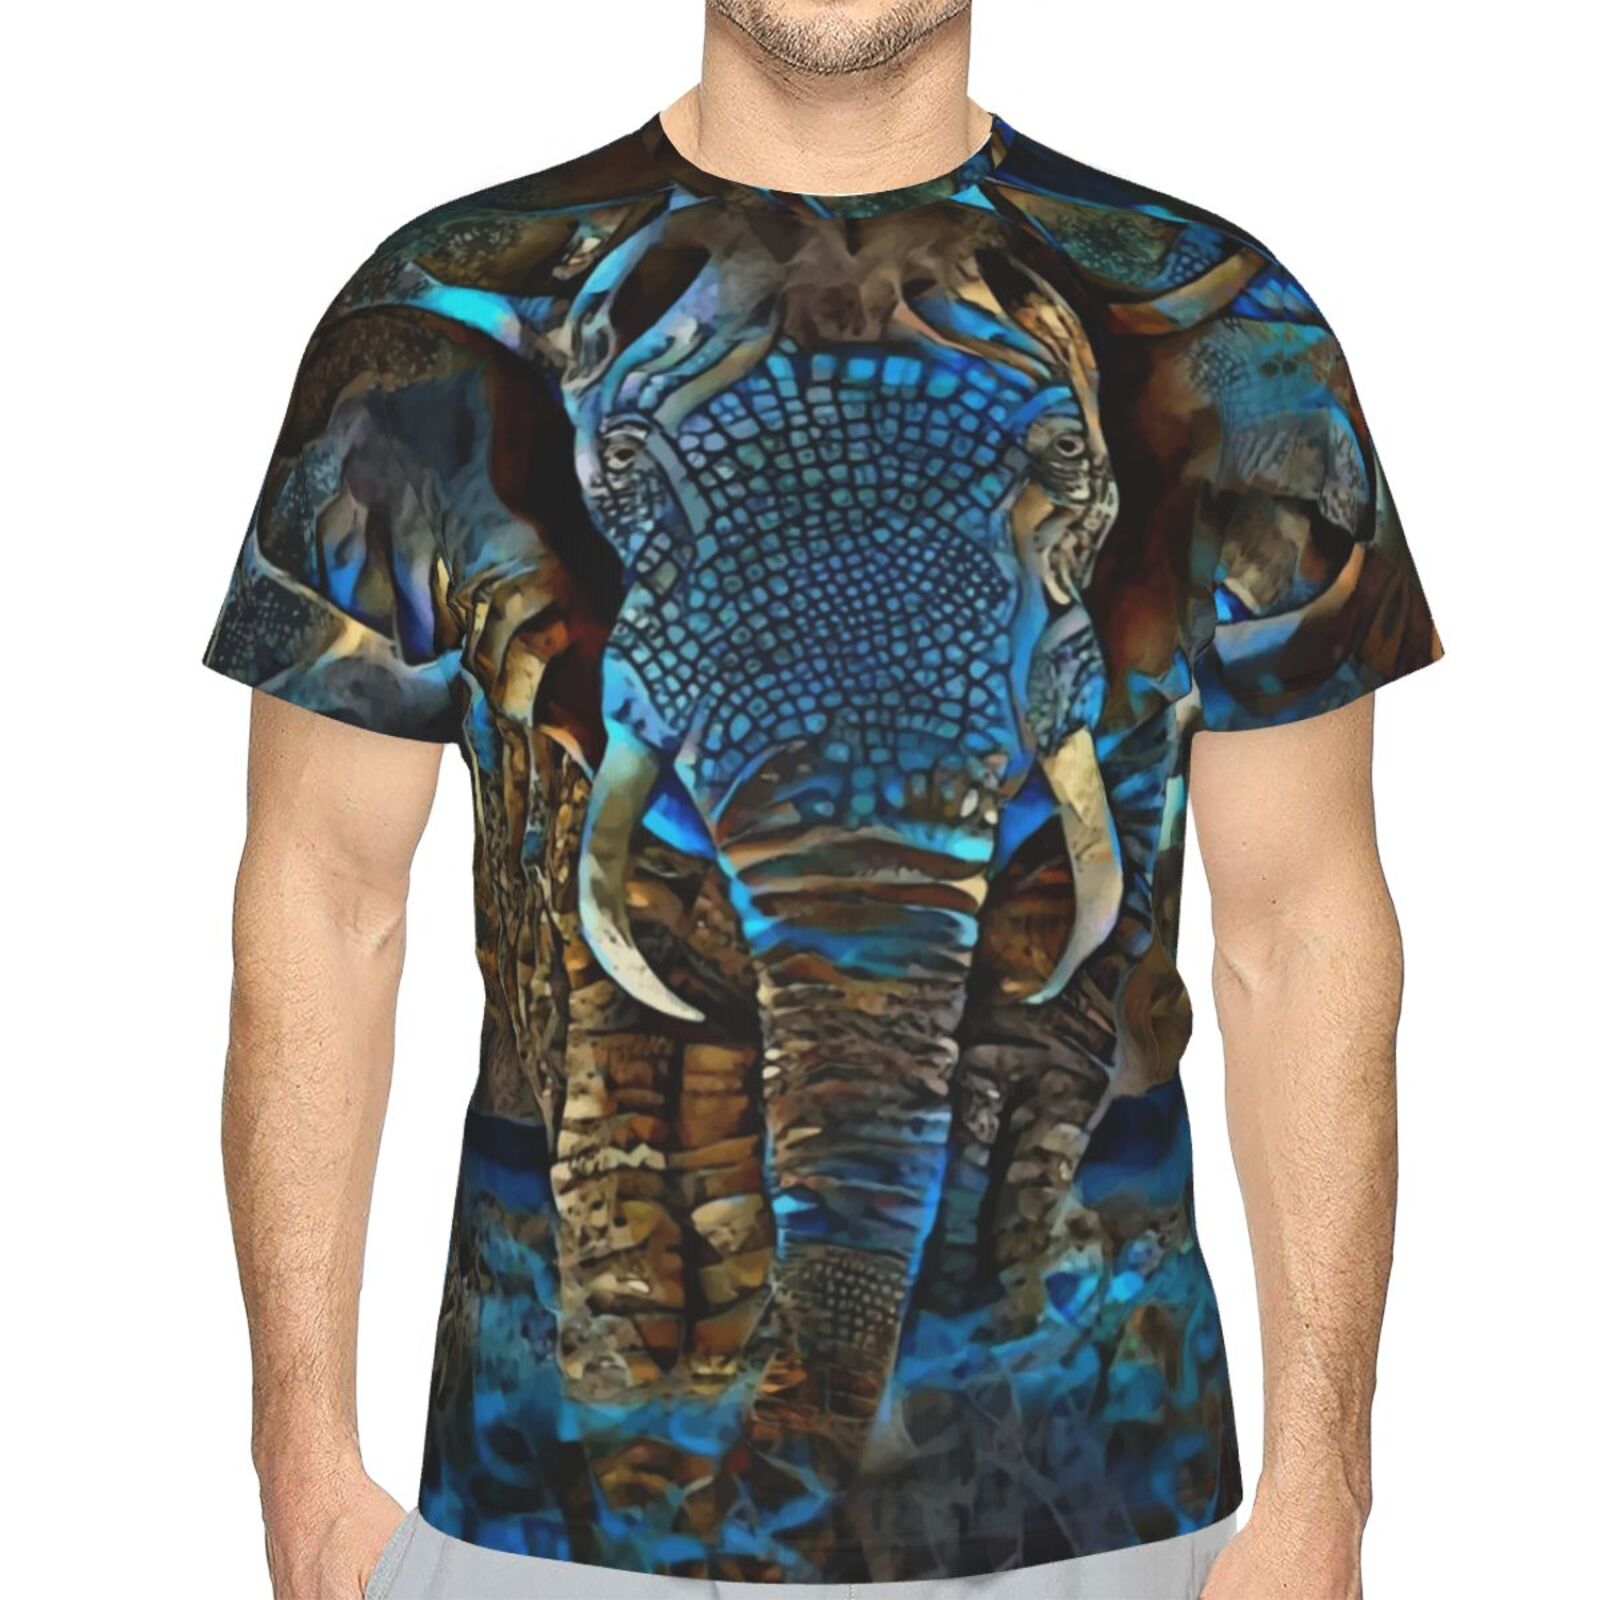 Коричневая синяя футболка со слоном Смешанные элементы мультимедиа Classic